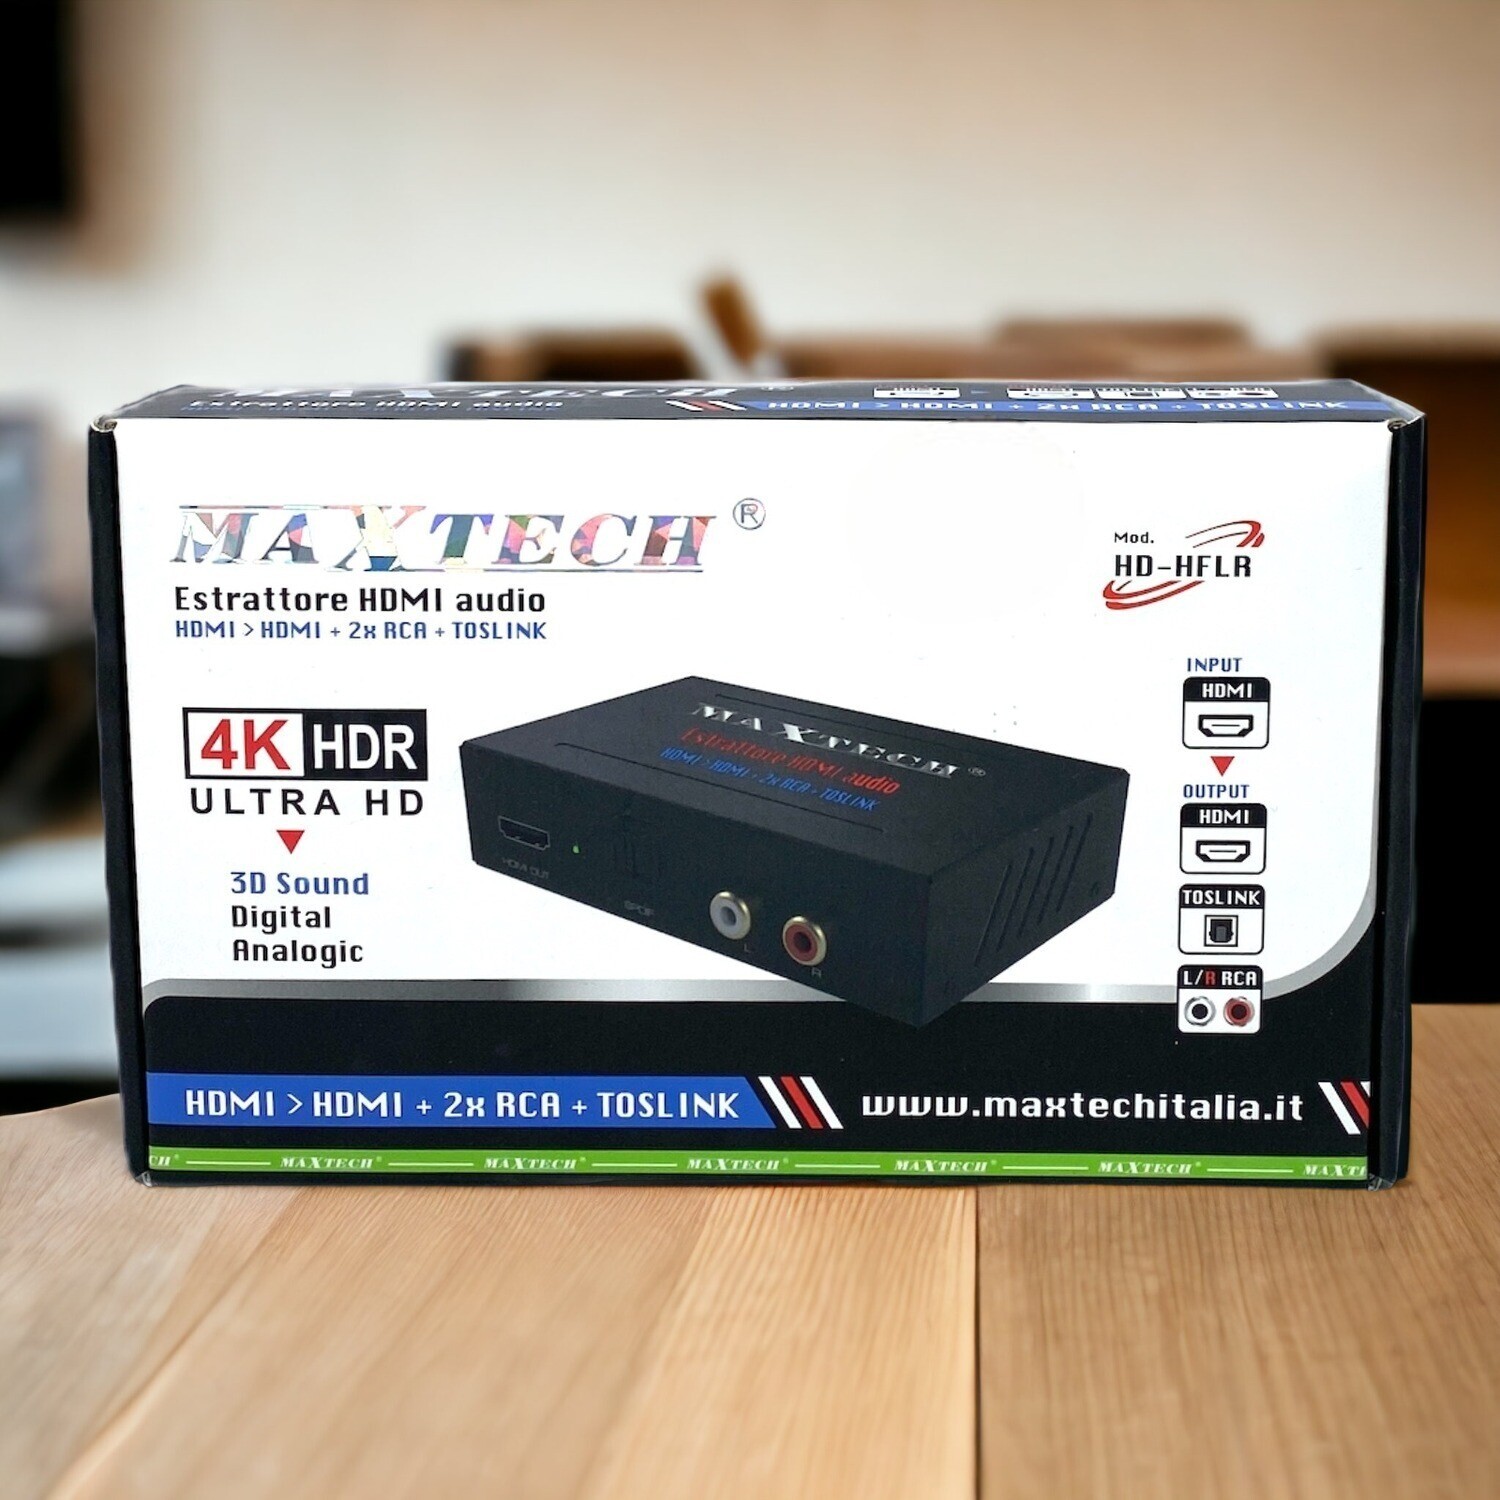 Estrattore HDMI Audio Maxtech: Audio di Qualità Superiore.